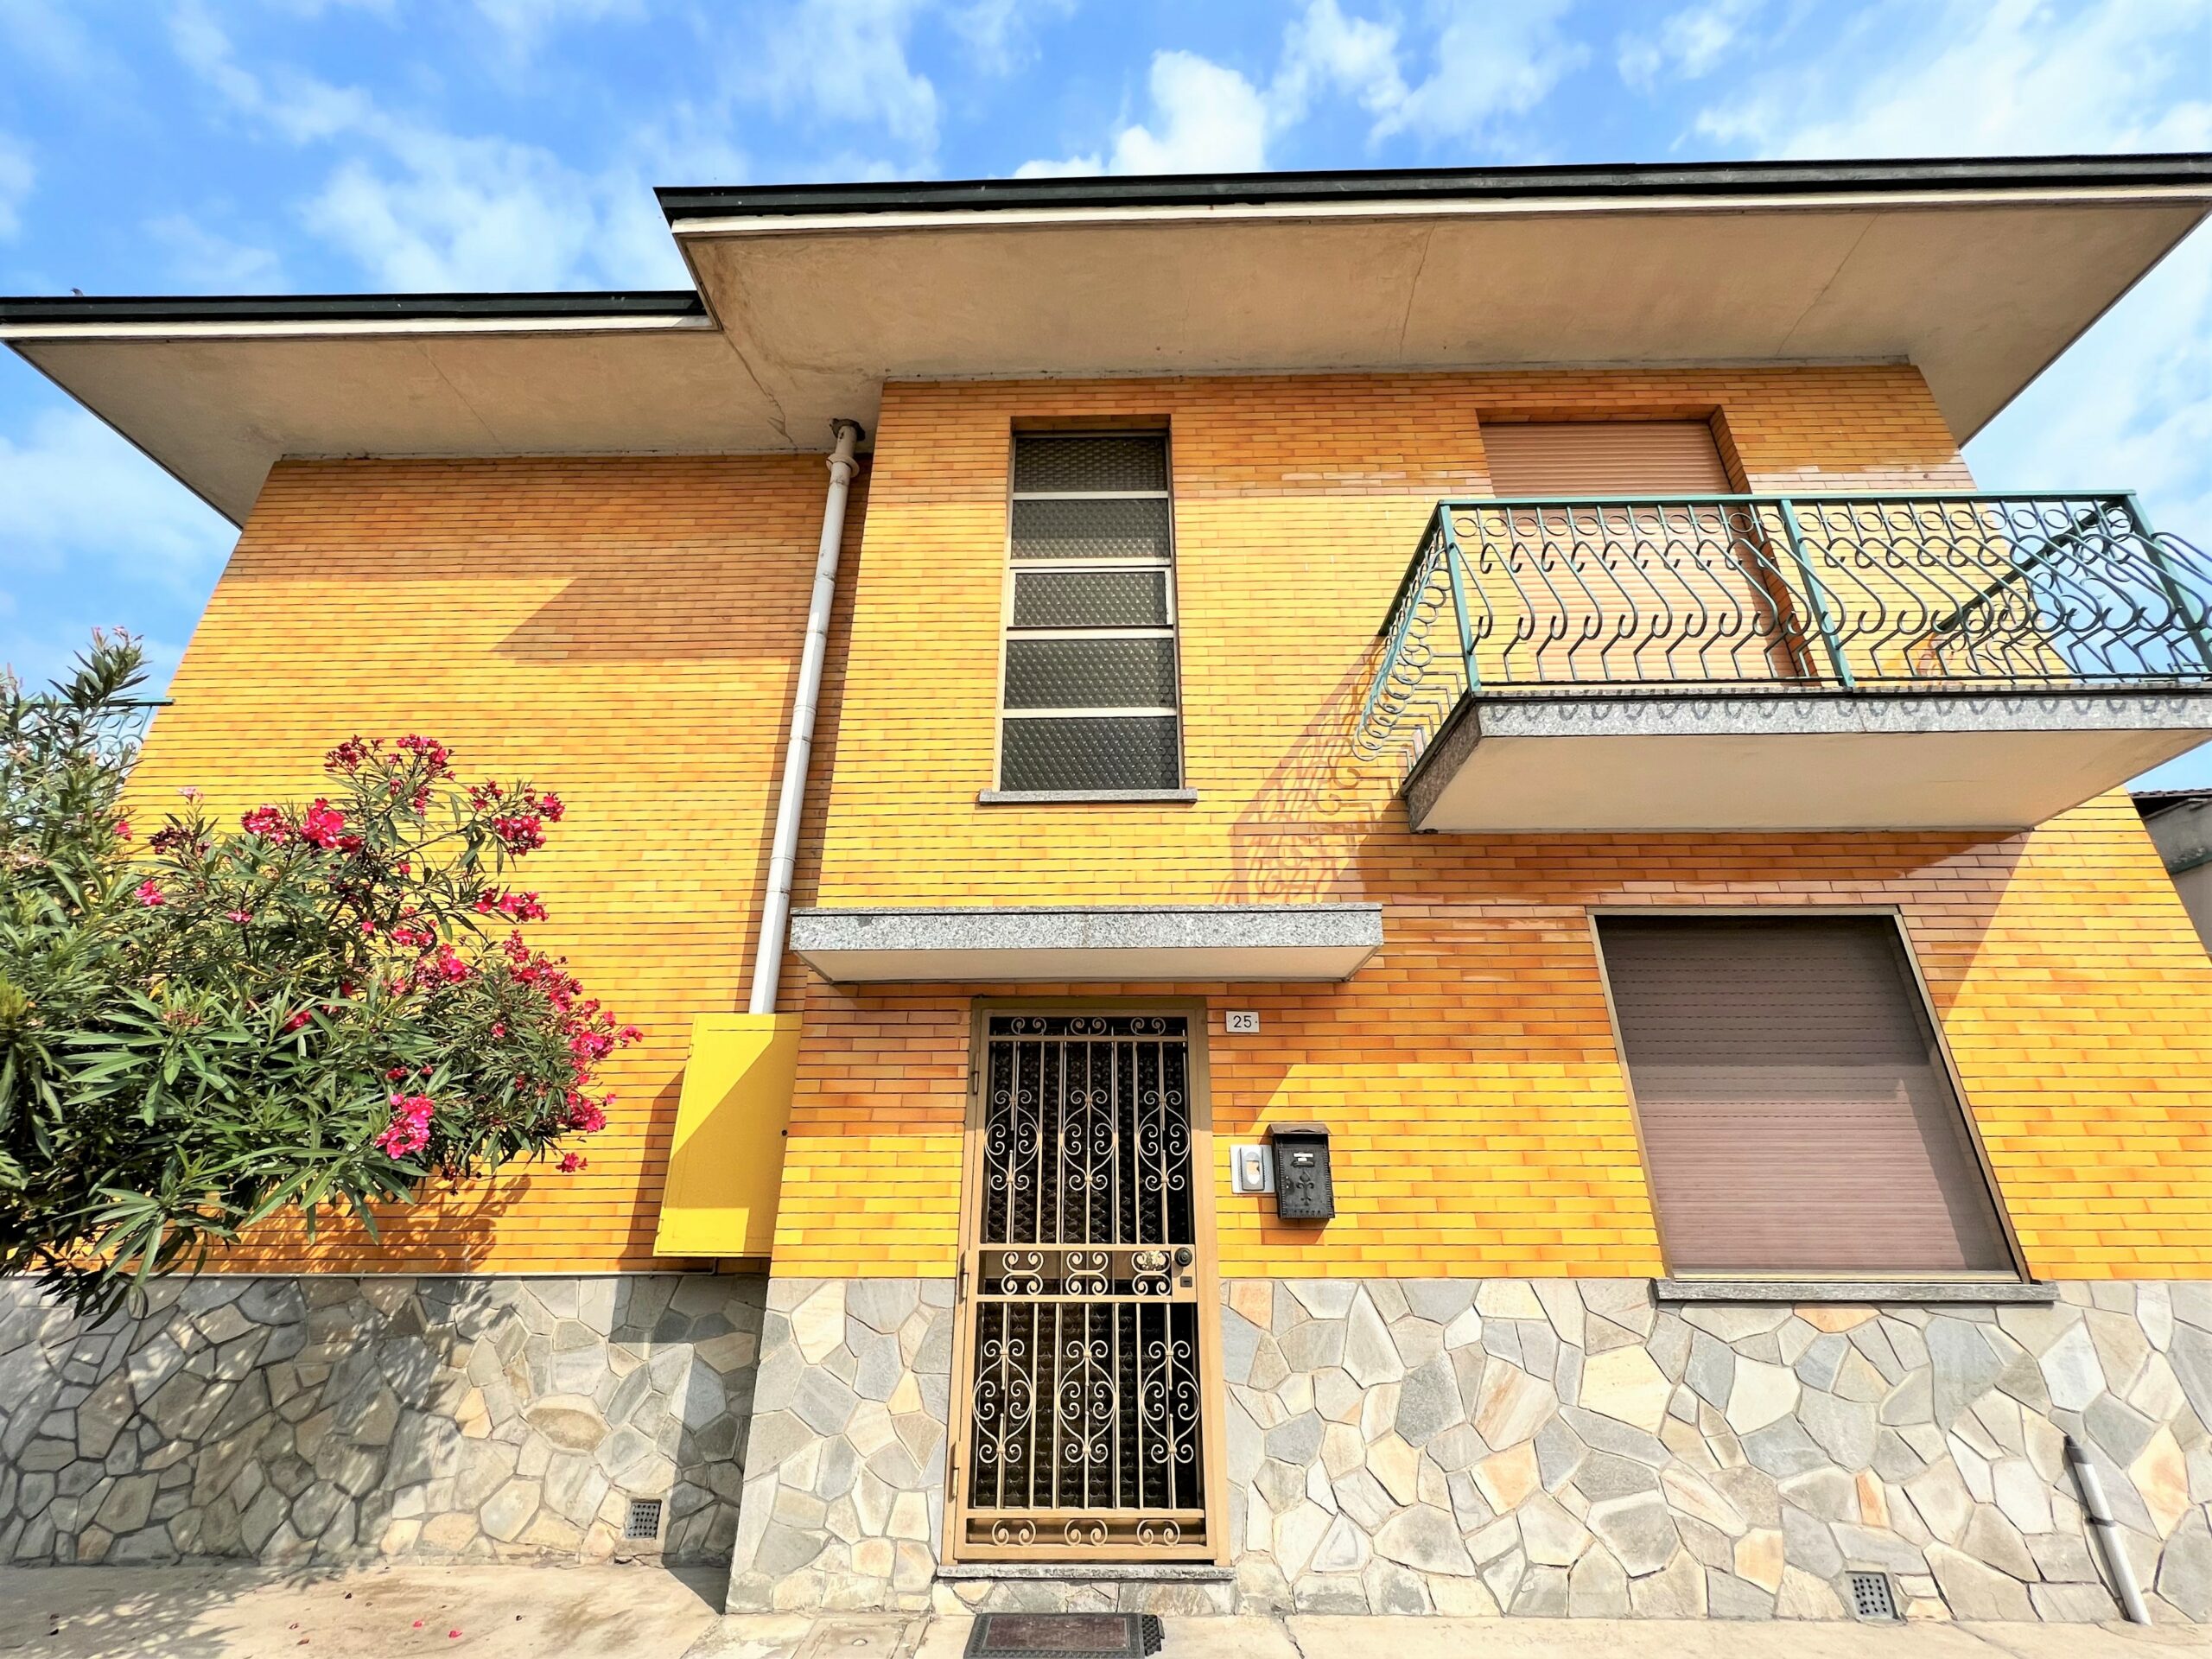 Casorate Primo (PV) – Appartamento trelocali con balconi e box autorimessa